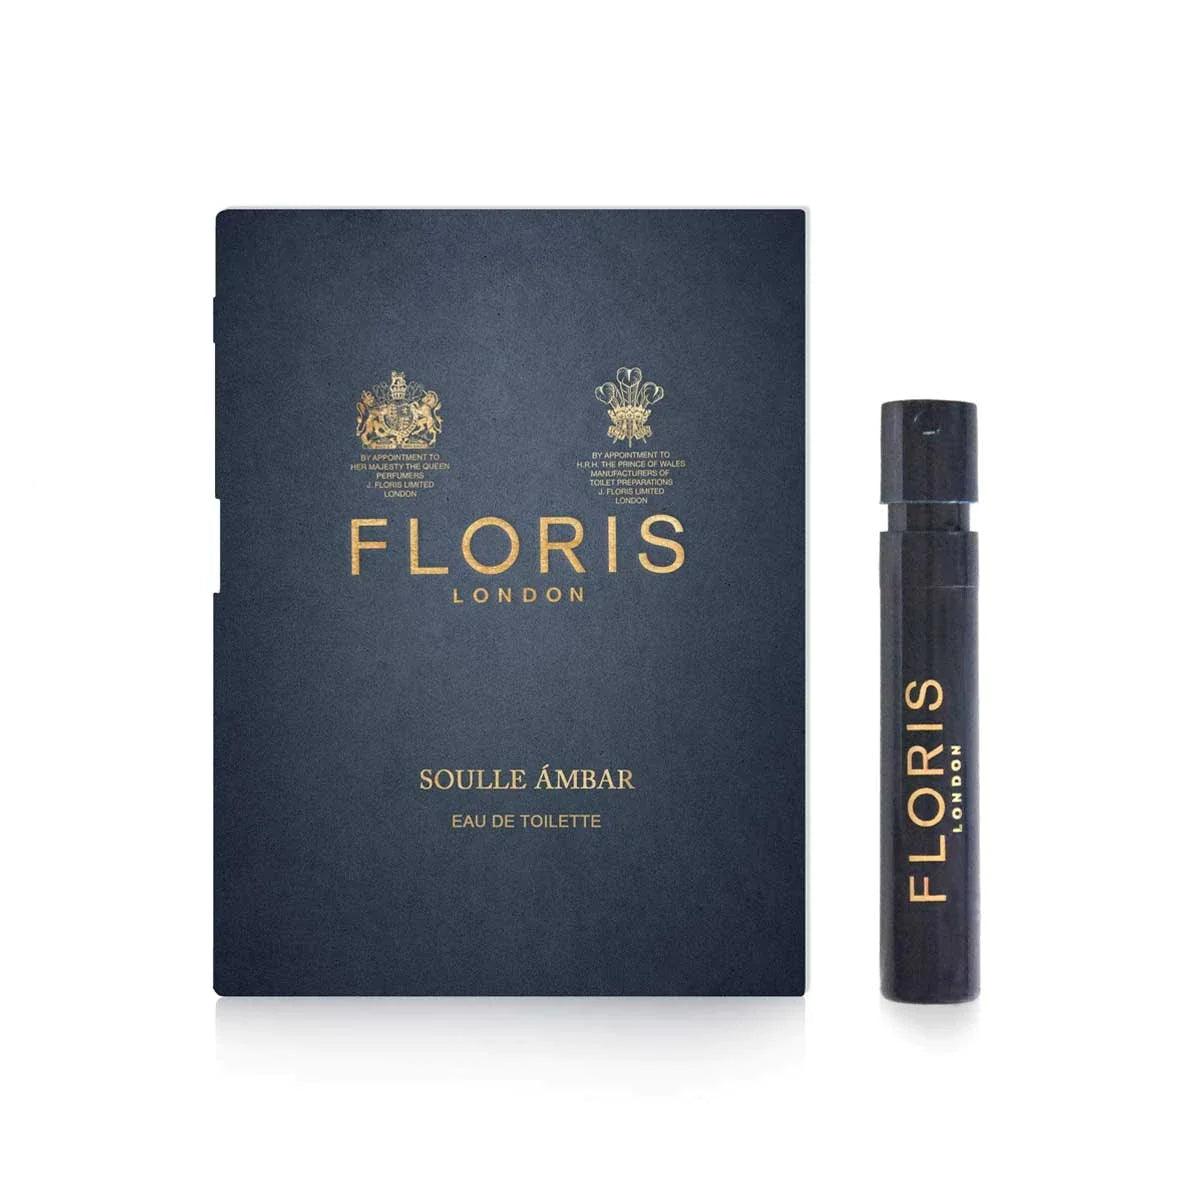 Floris London Floris Soulle Ambar, Eau de Toilette, 2 ml | Parfyme | Floris London | JK SHOP | JK Barber og herre frisør | Lavepriser | Best